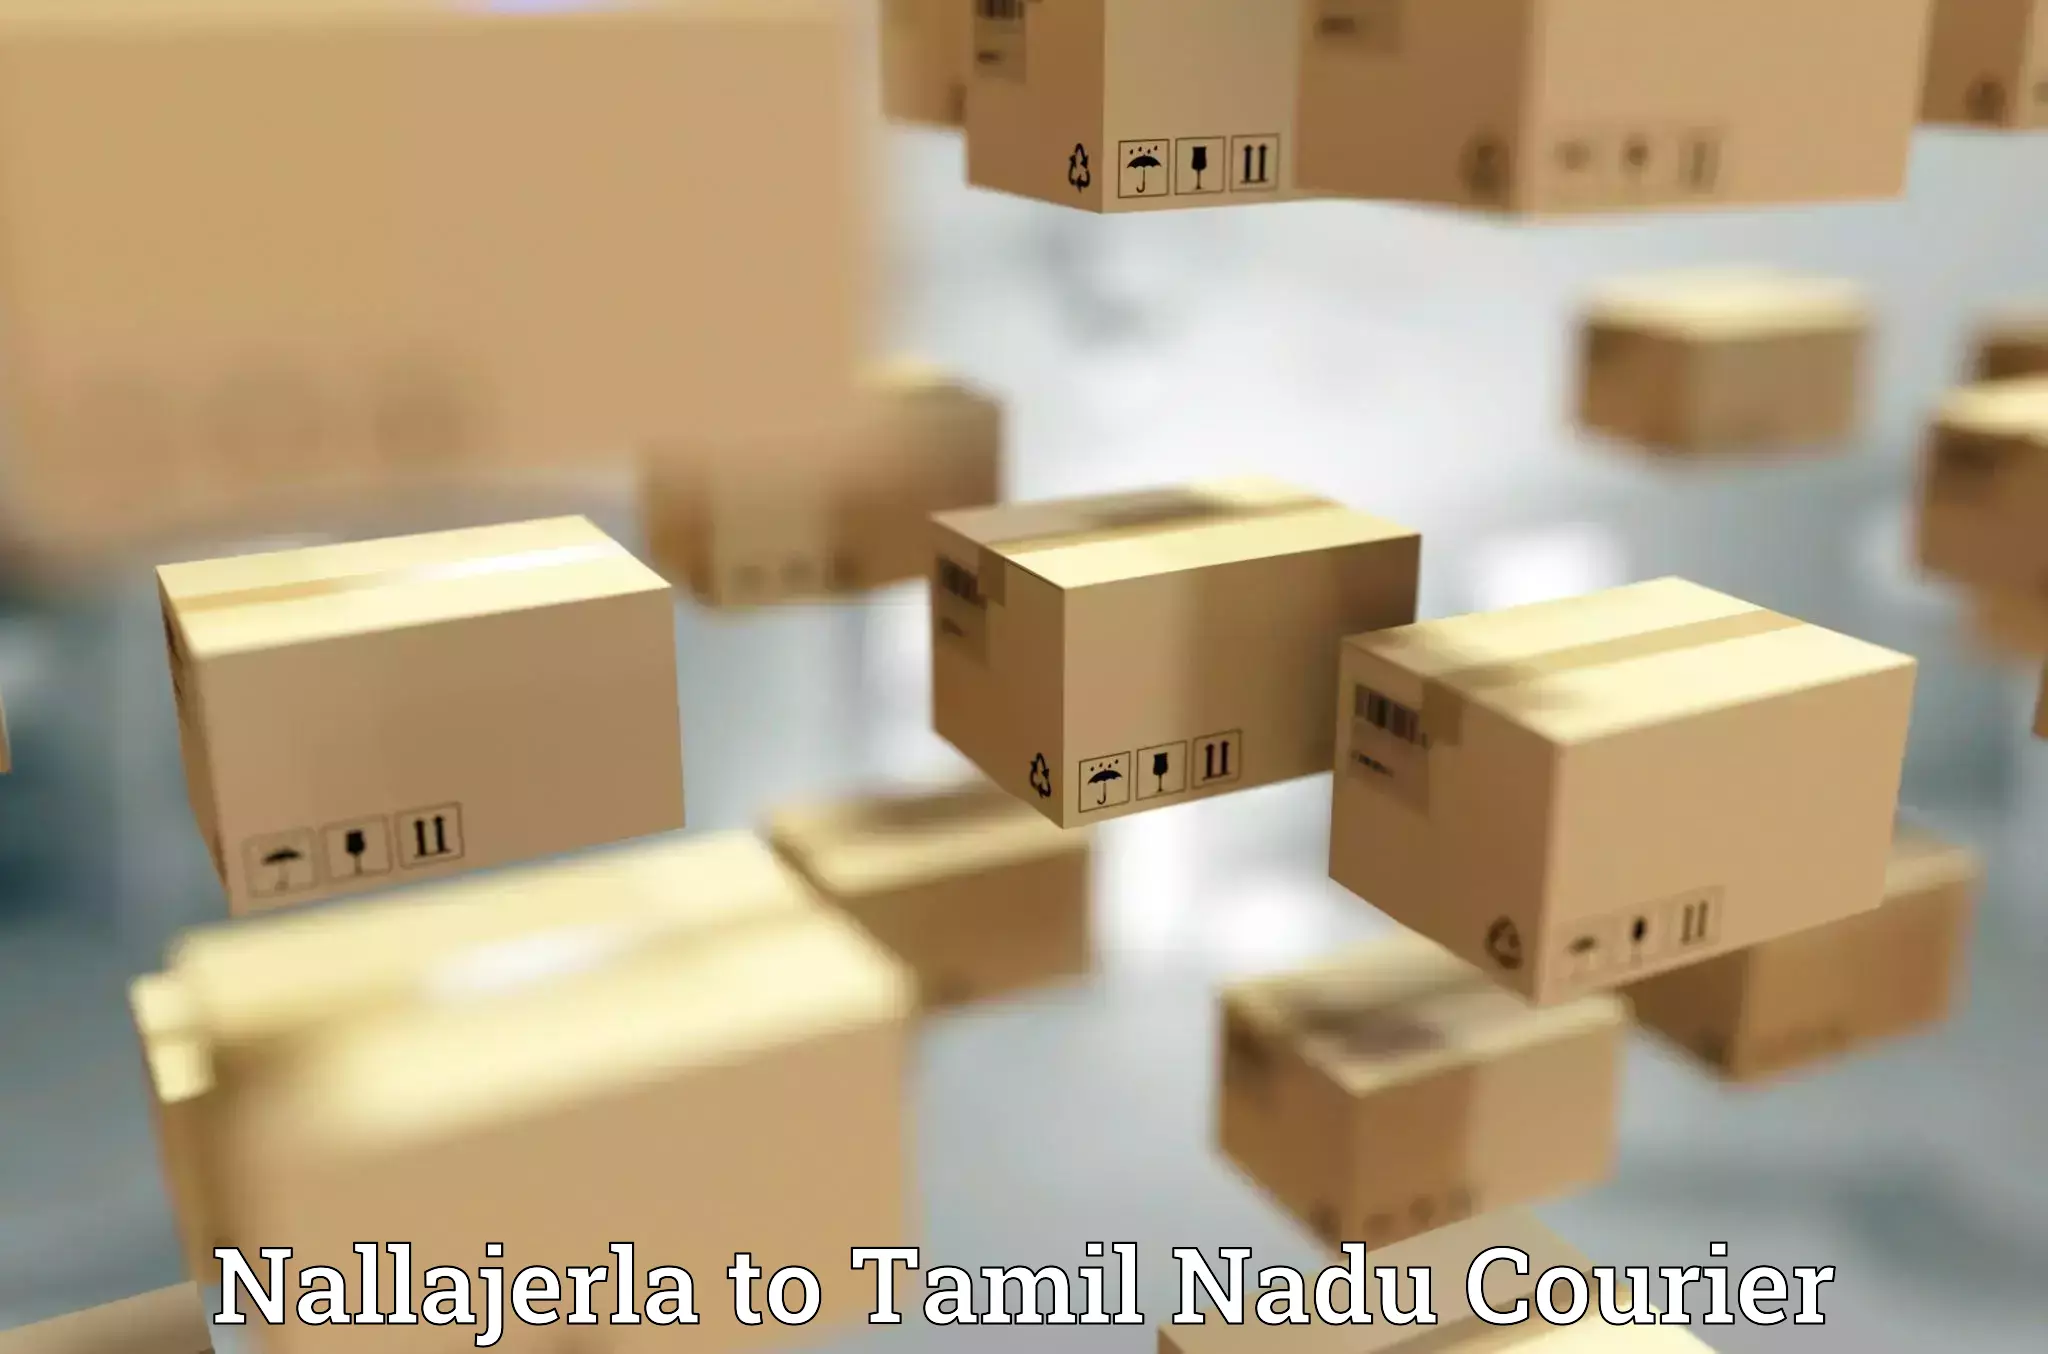 Reliable parcel services Nallajerla to Perunali